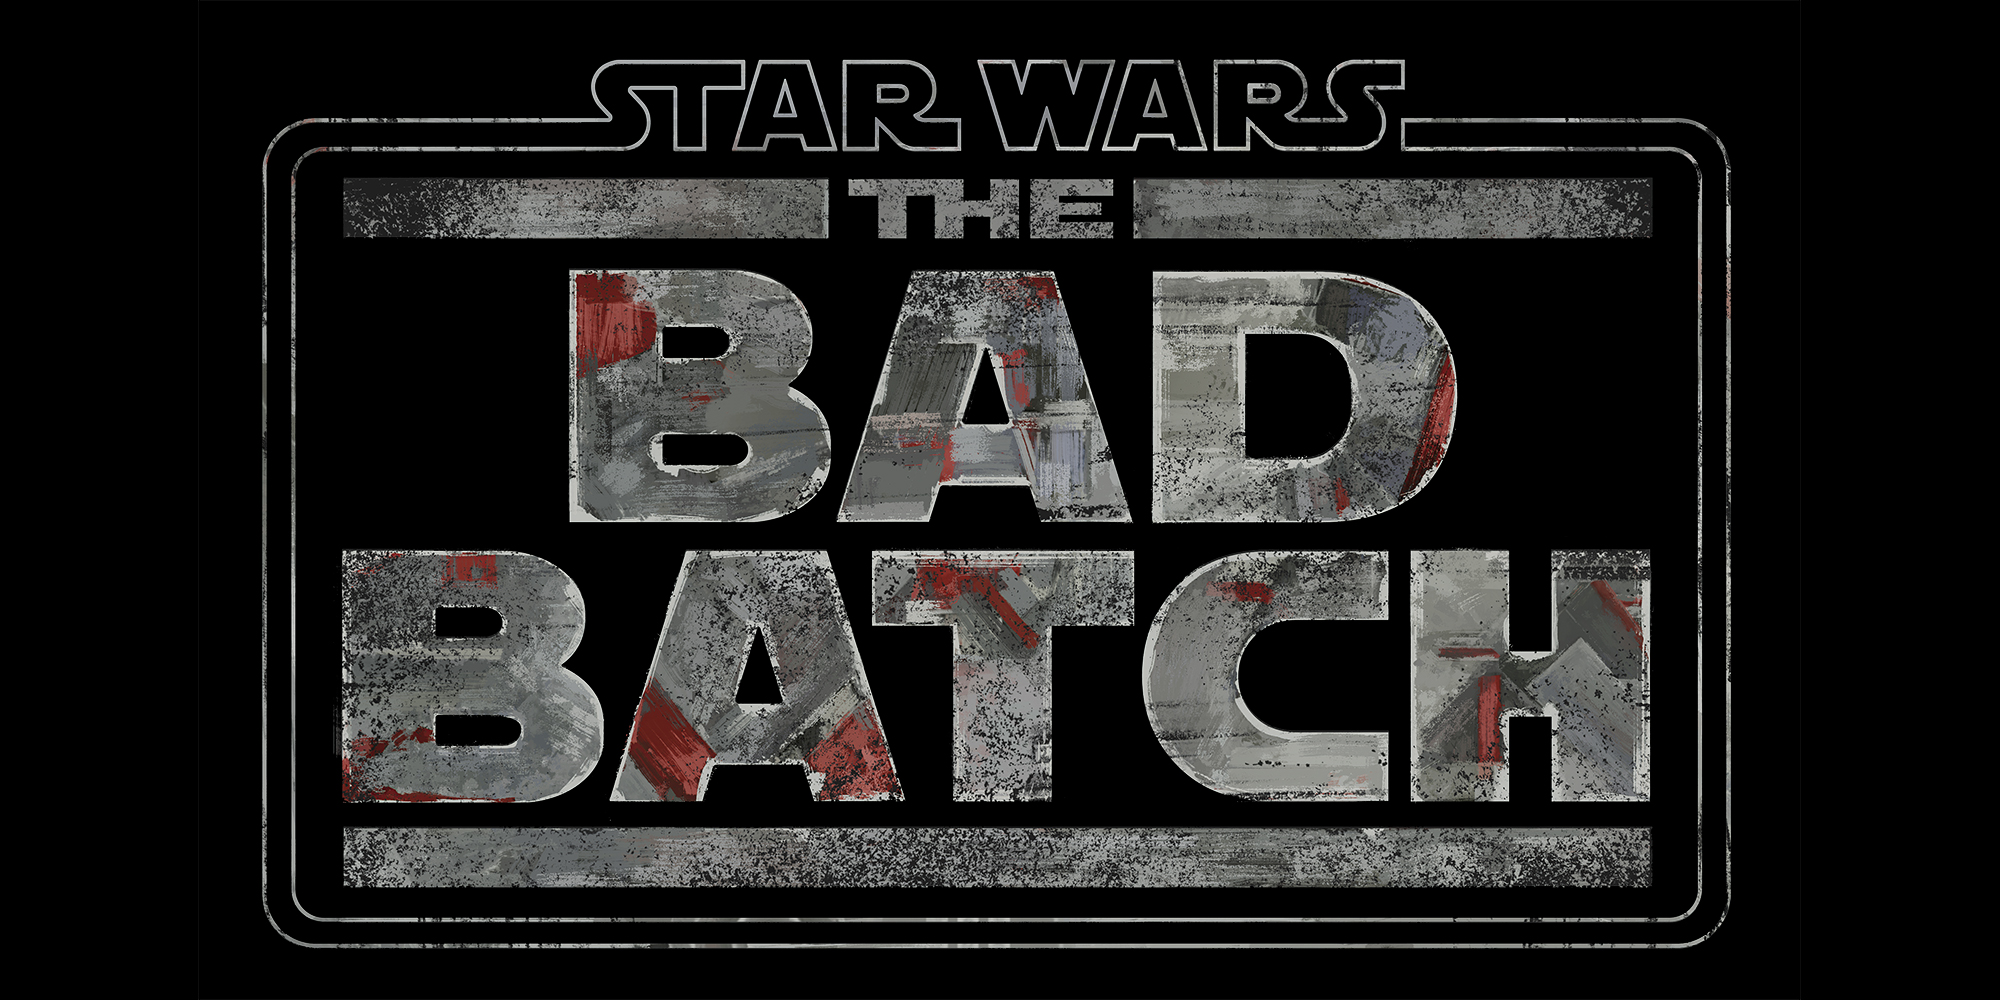  Disney anuncia su nueva serie animada: “Star Wars: The Bad Batch”